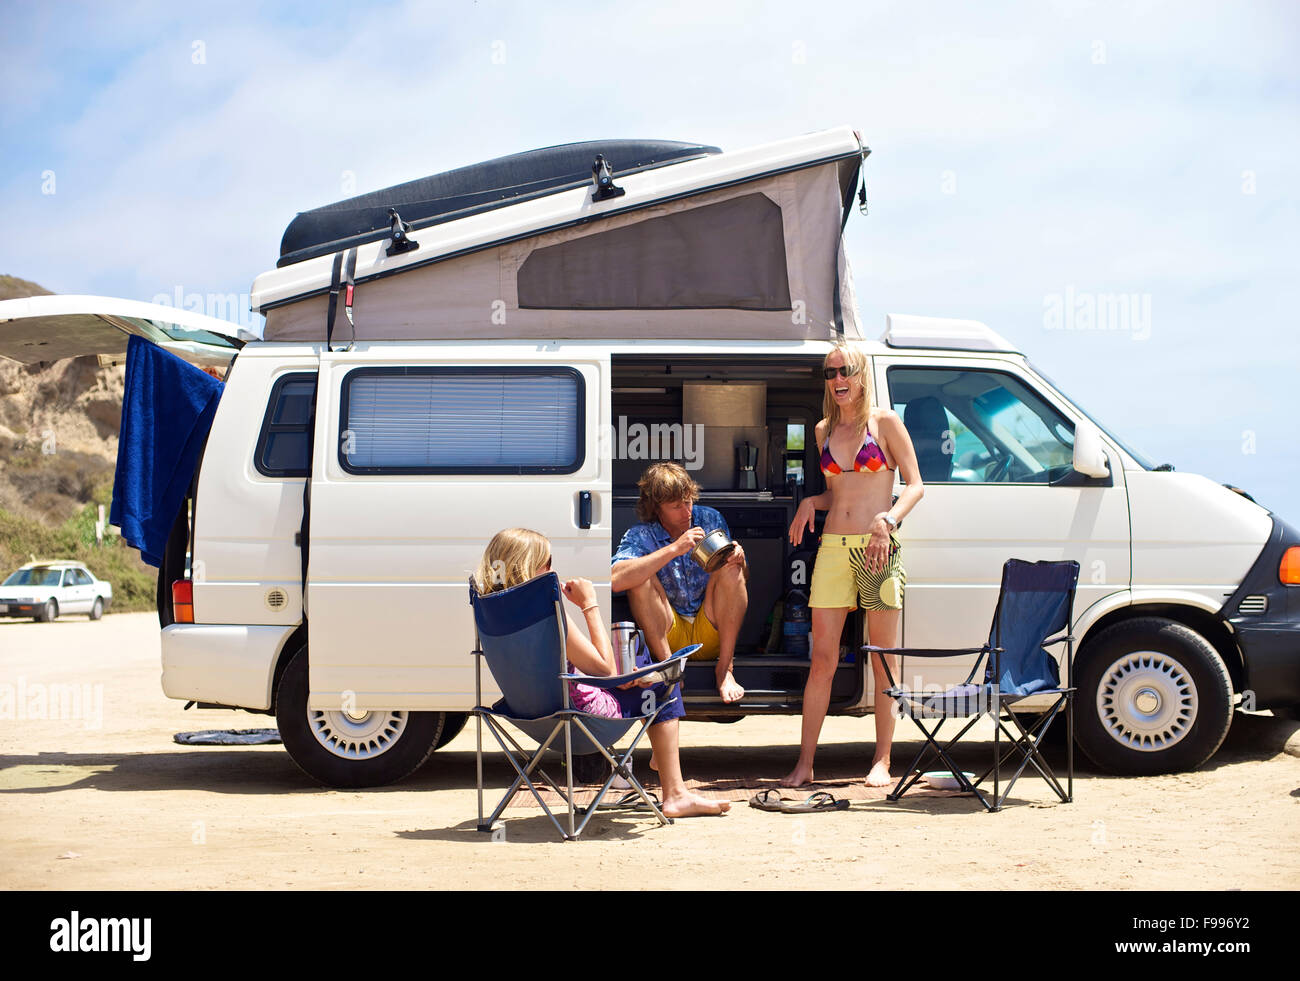 Trois personnes se tiennent à côté de leur van Camping Surf Beach, à San Onofre, Californie Banque D'Images